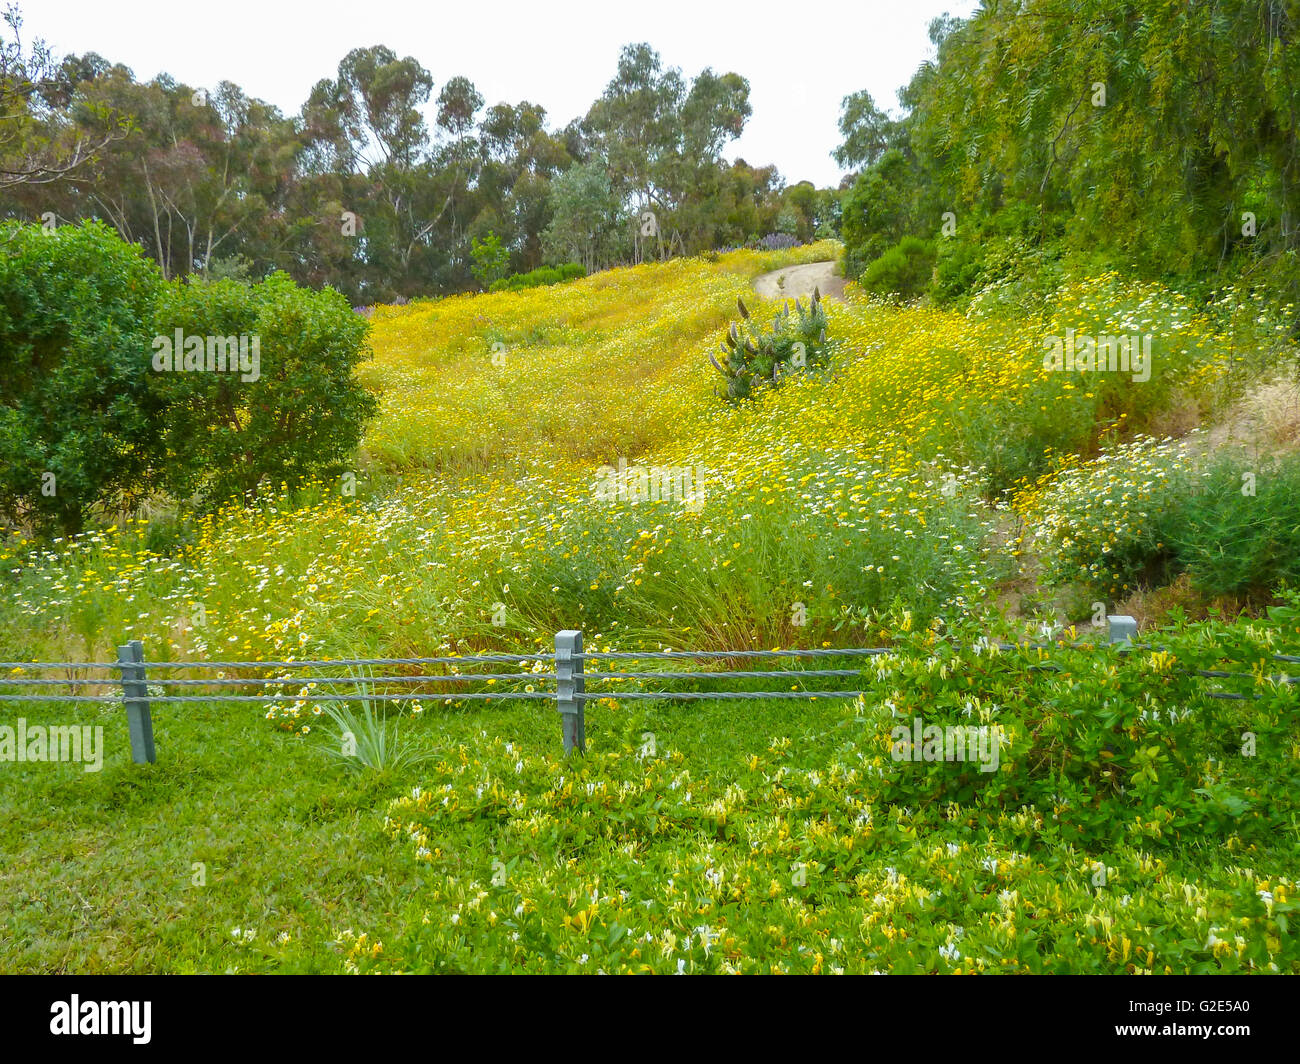 Schönen südlichen Kalifornien Landschaft im April mit Bäumen, blühenden Pflanzen und einen Pfad Stockfoto